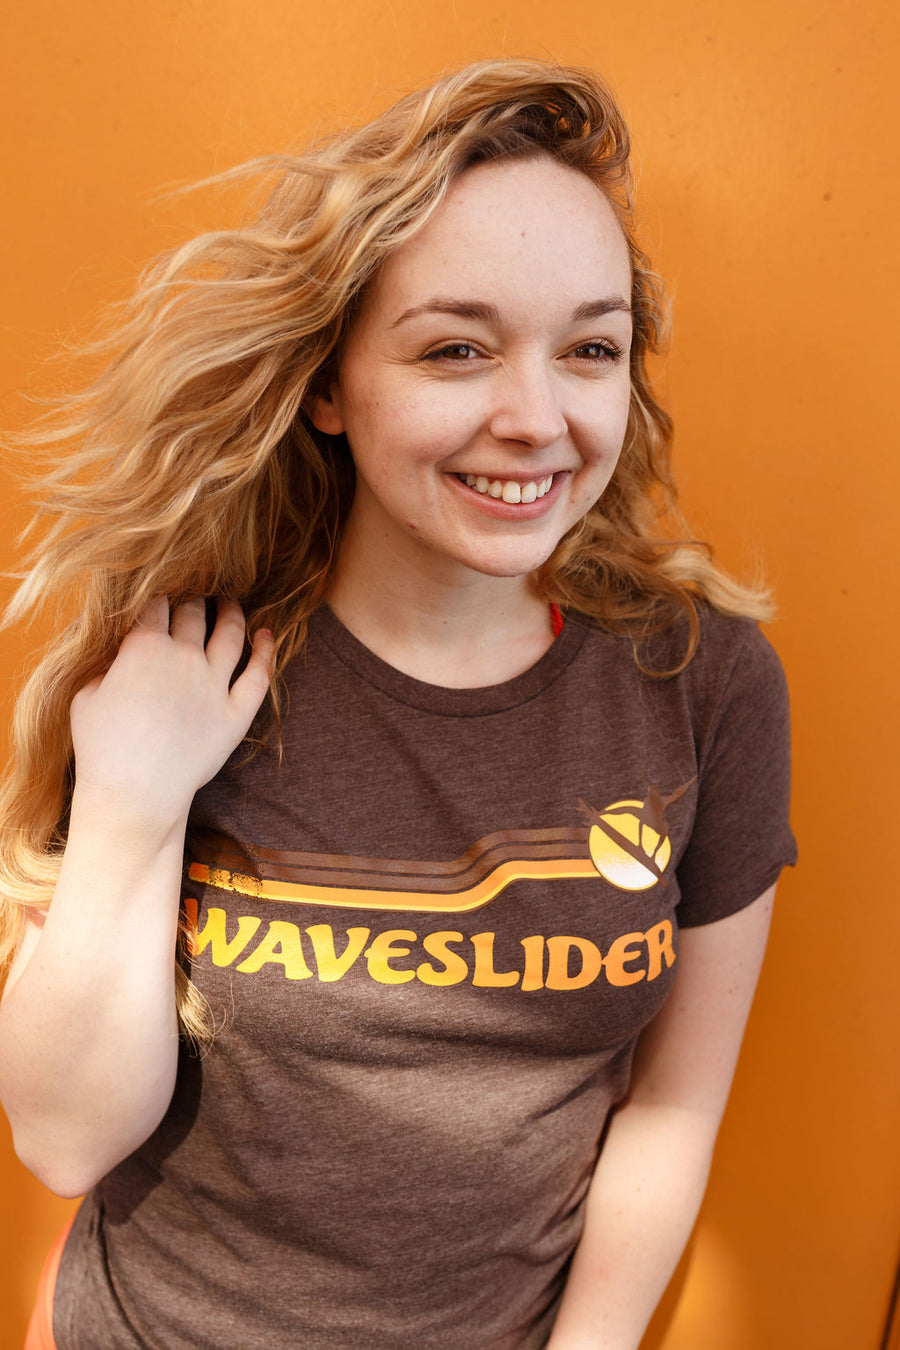 Waveslider Retro Womens T-Shirt Brown